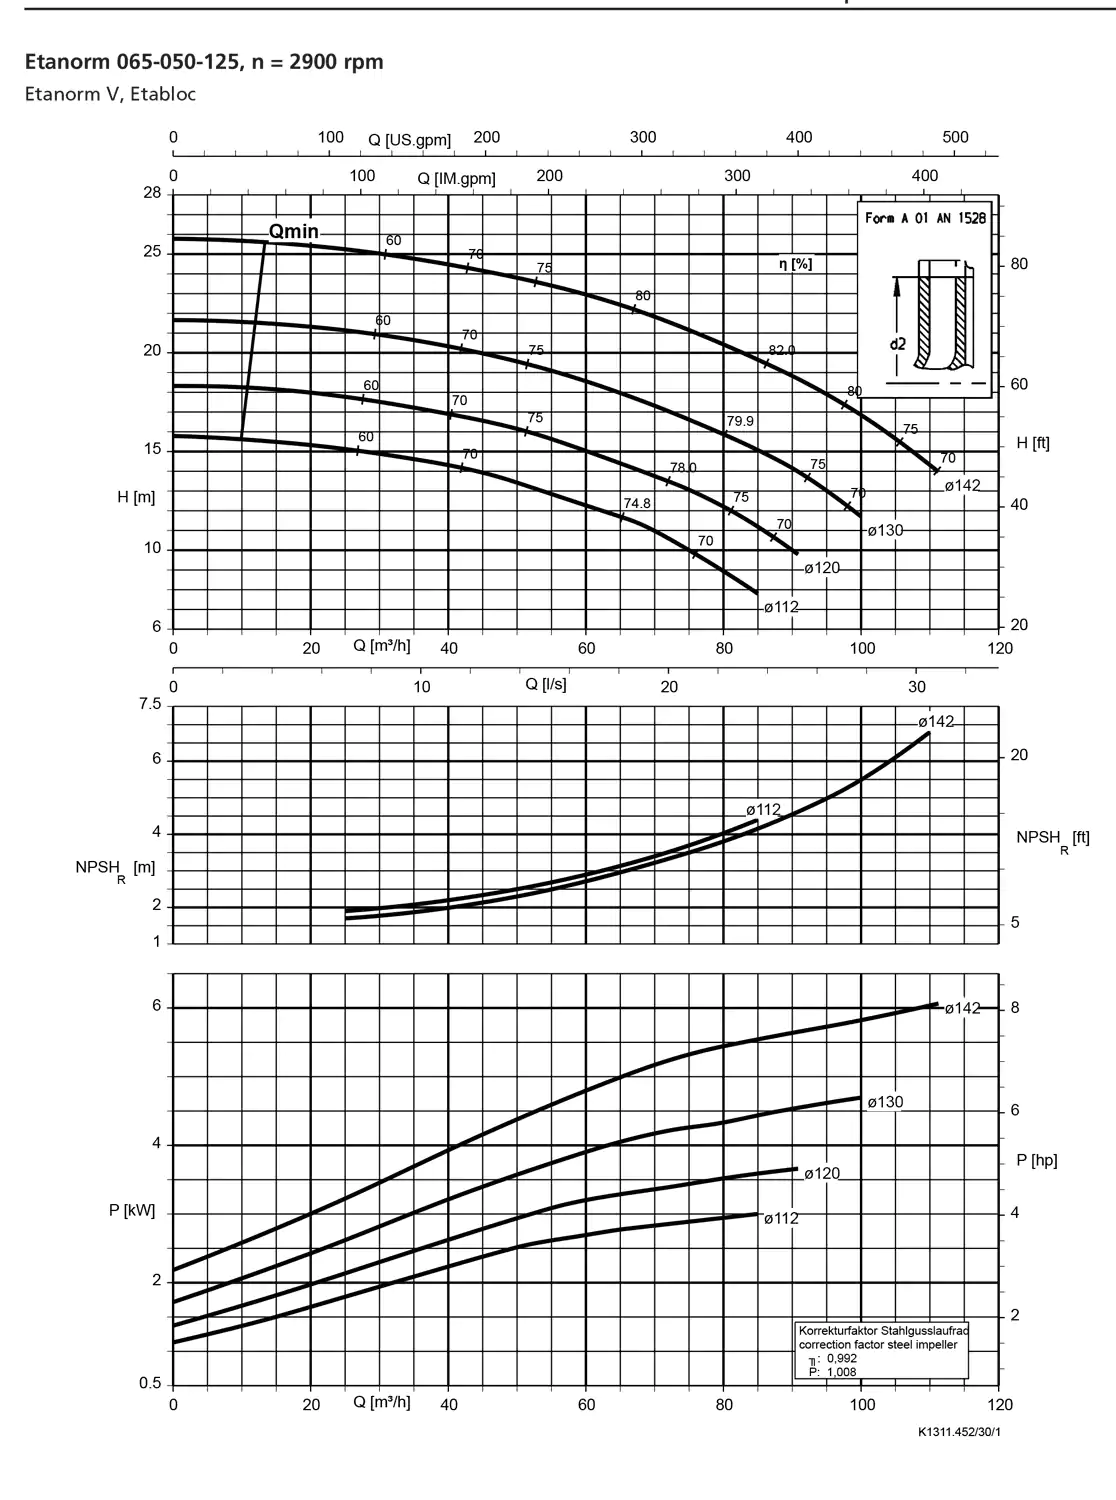 نمودار-کارکرد-پمپ-etanorm-syt-65-050-125-2900